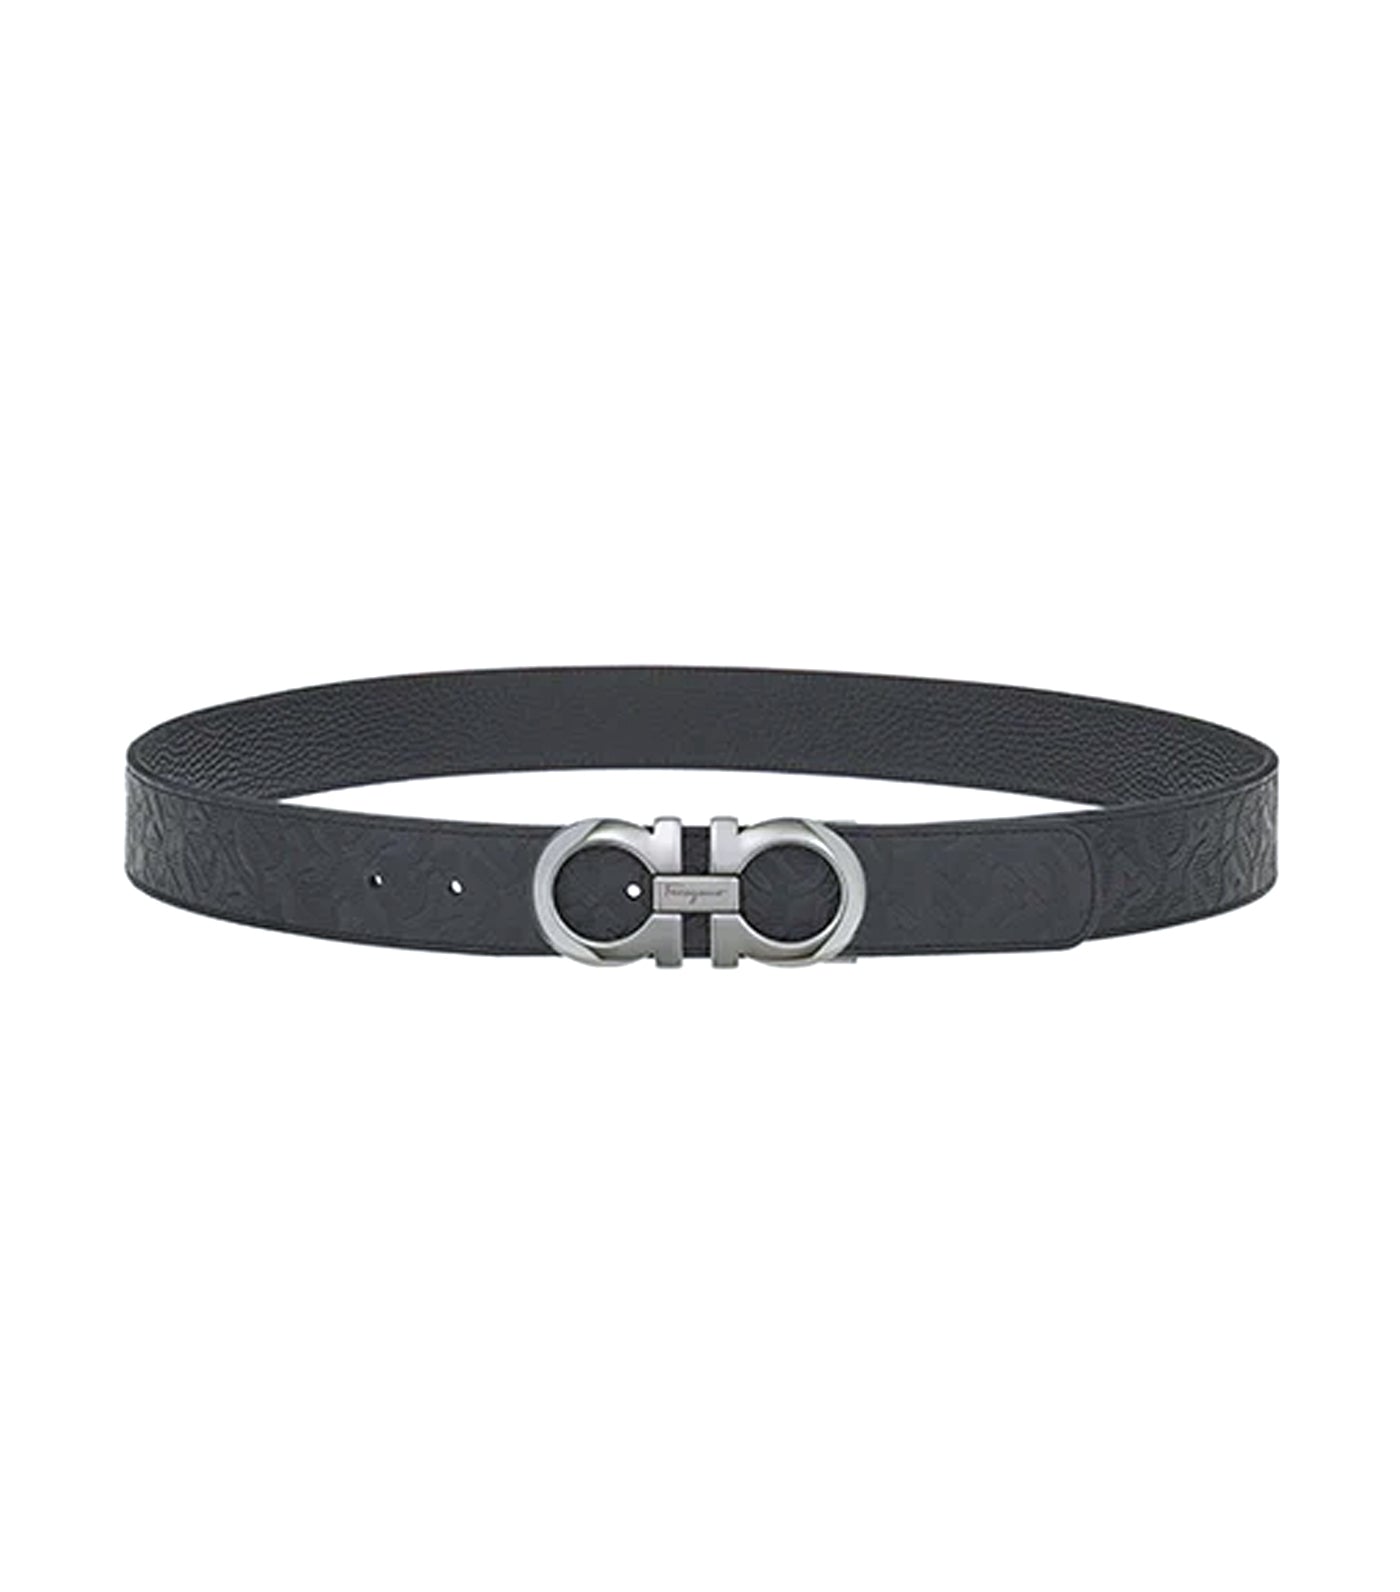 Reversible And Adjustable Gancini Belt Black